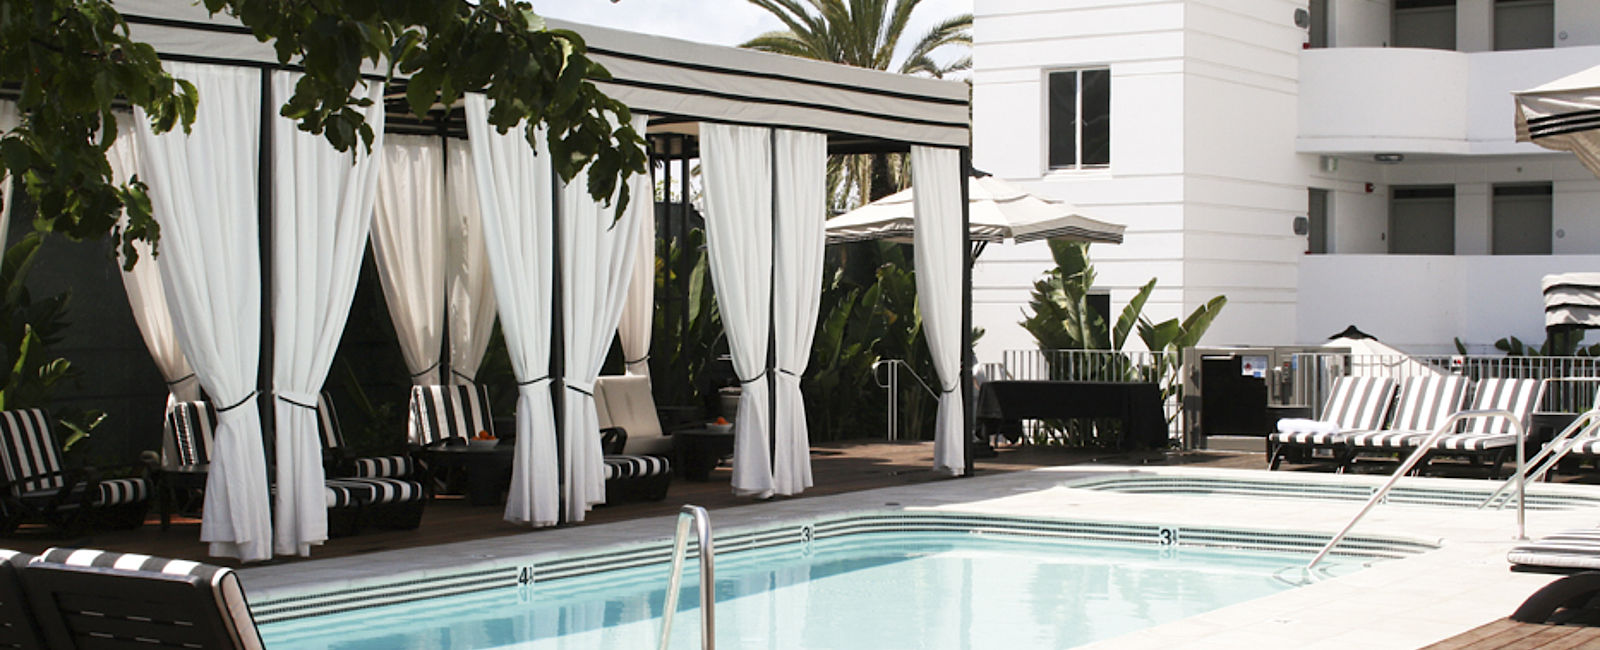 HOTELTEST
 Hotel Shangri-La Santa Monica 
 Playboy-Dampfer 